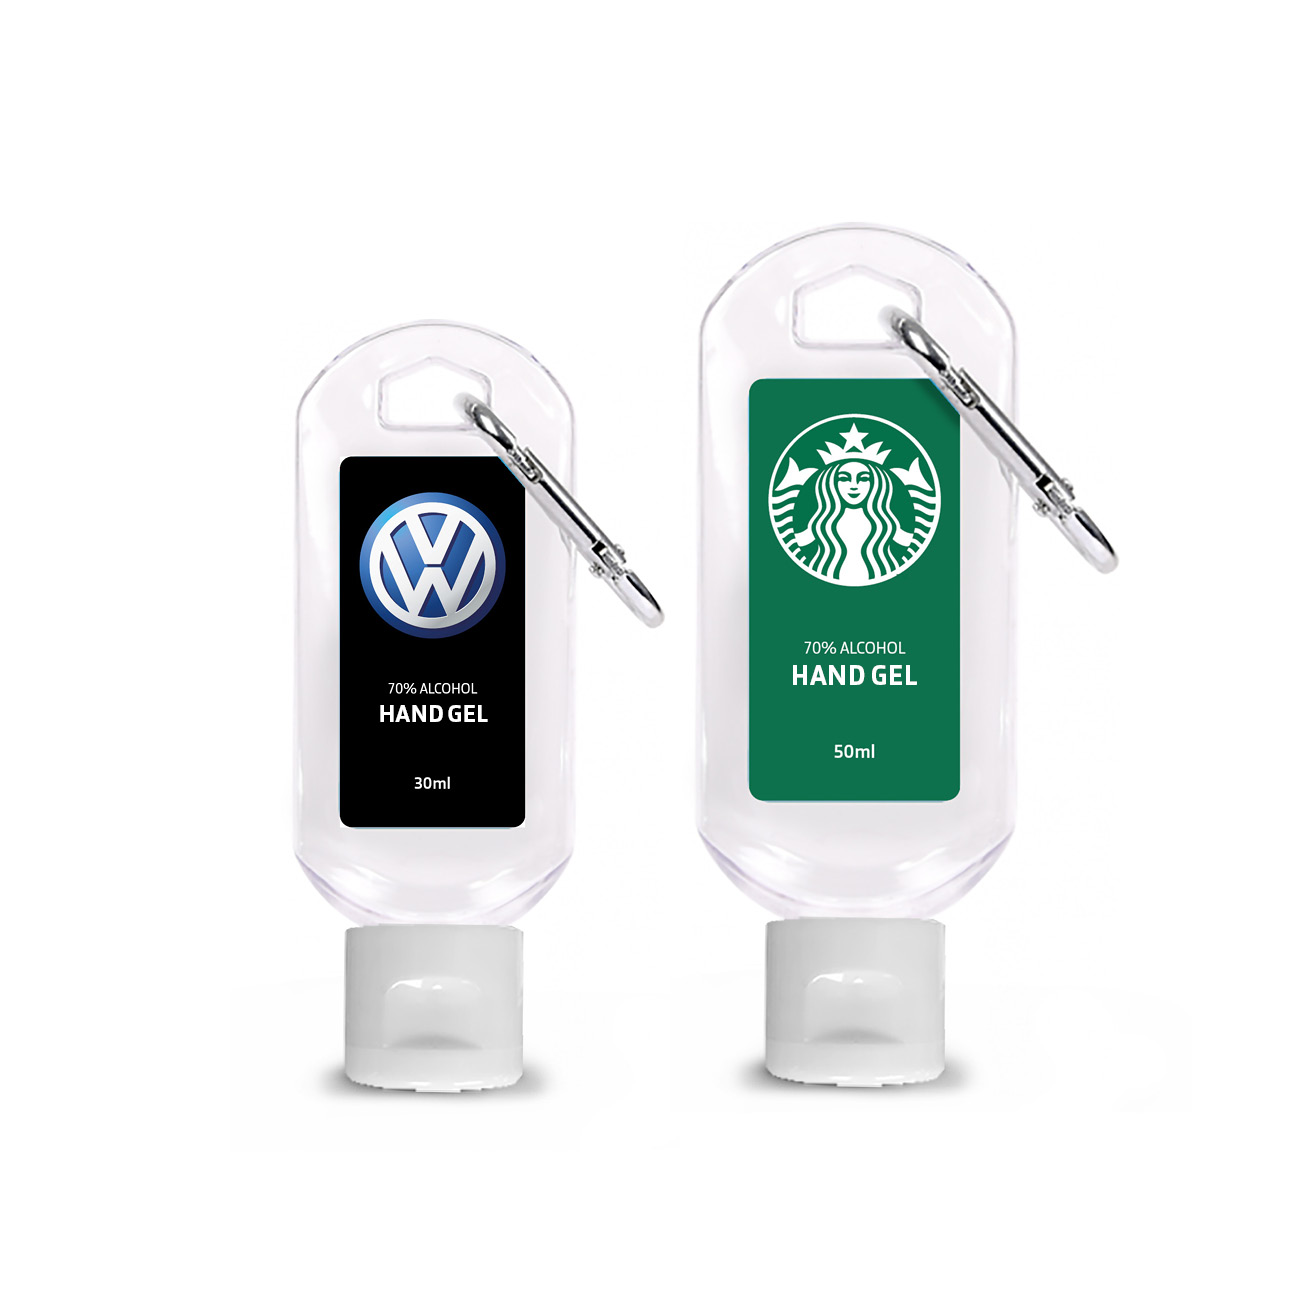 30ml & 50ml Carabiner Sanitiser_VW & Starbucks